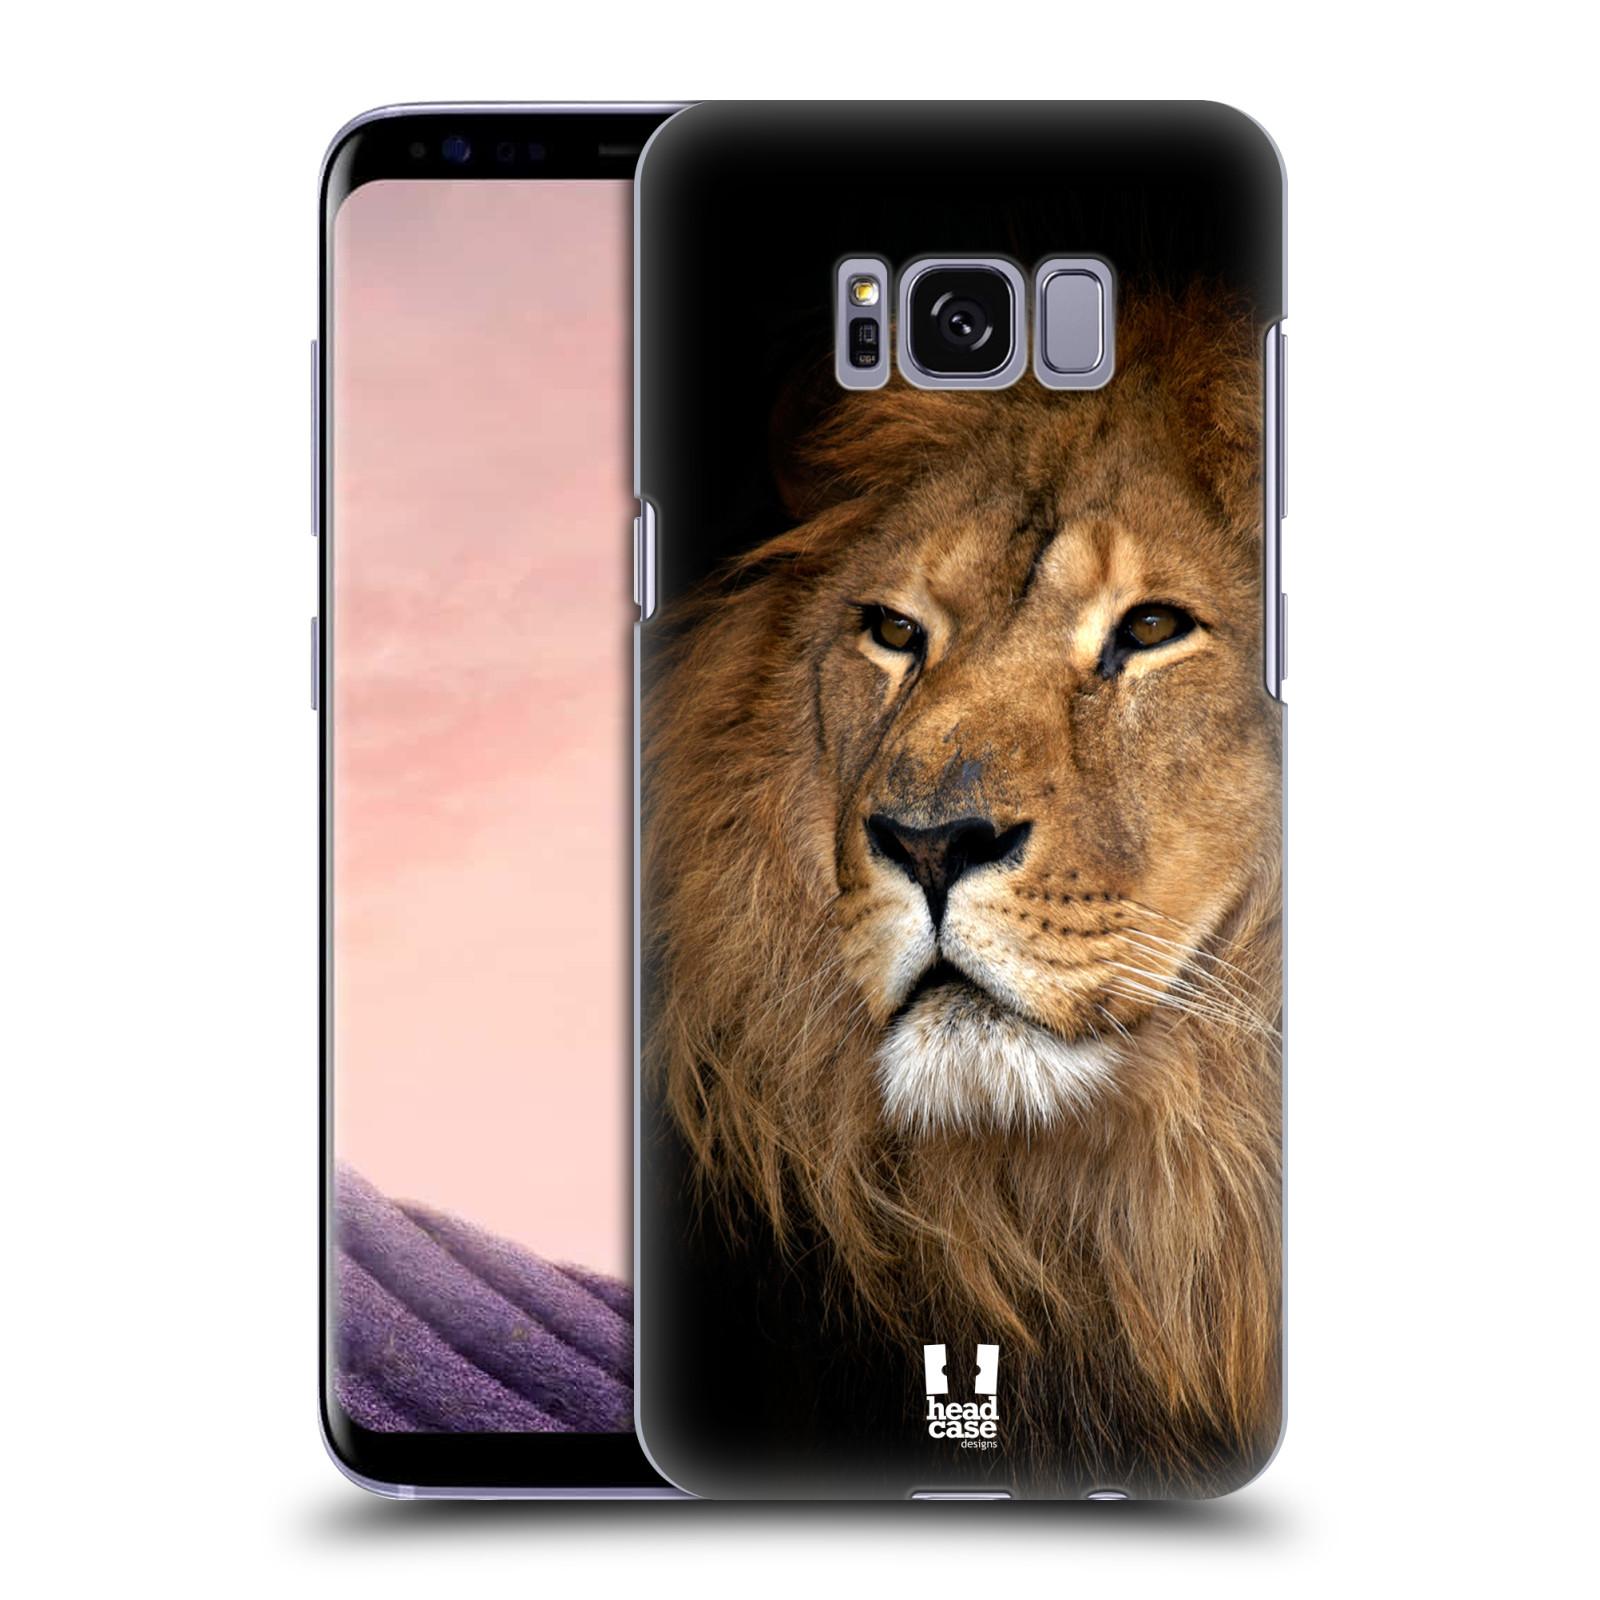 Zadní obal pro mobil Samsung Galaxy S8 - HEAD CASE - Svět zvířat král zvířat Lev